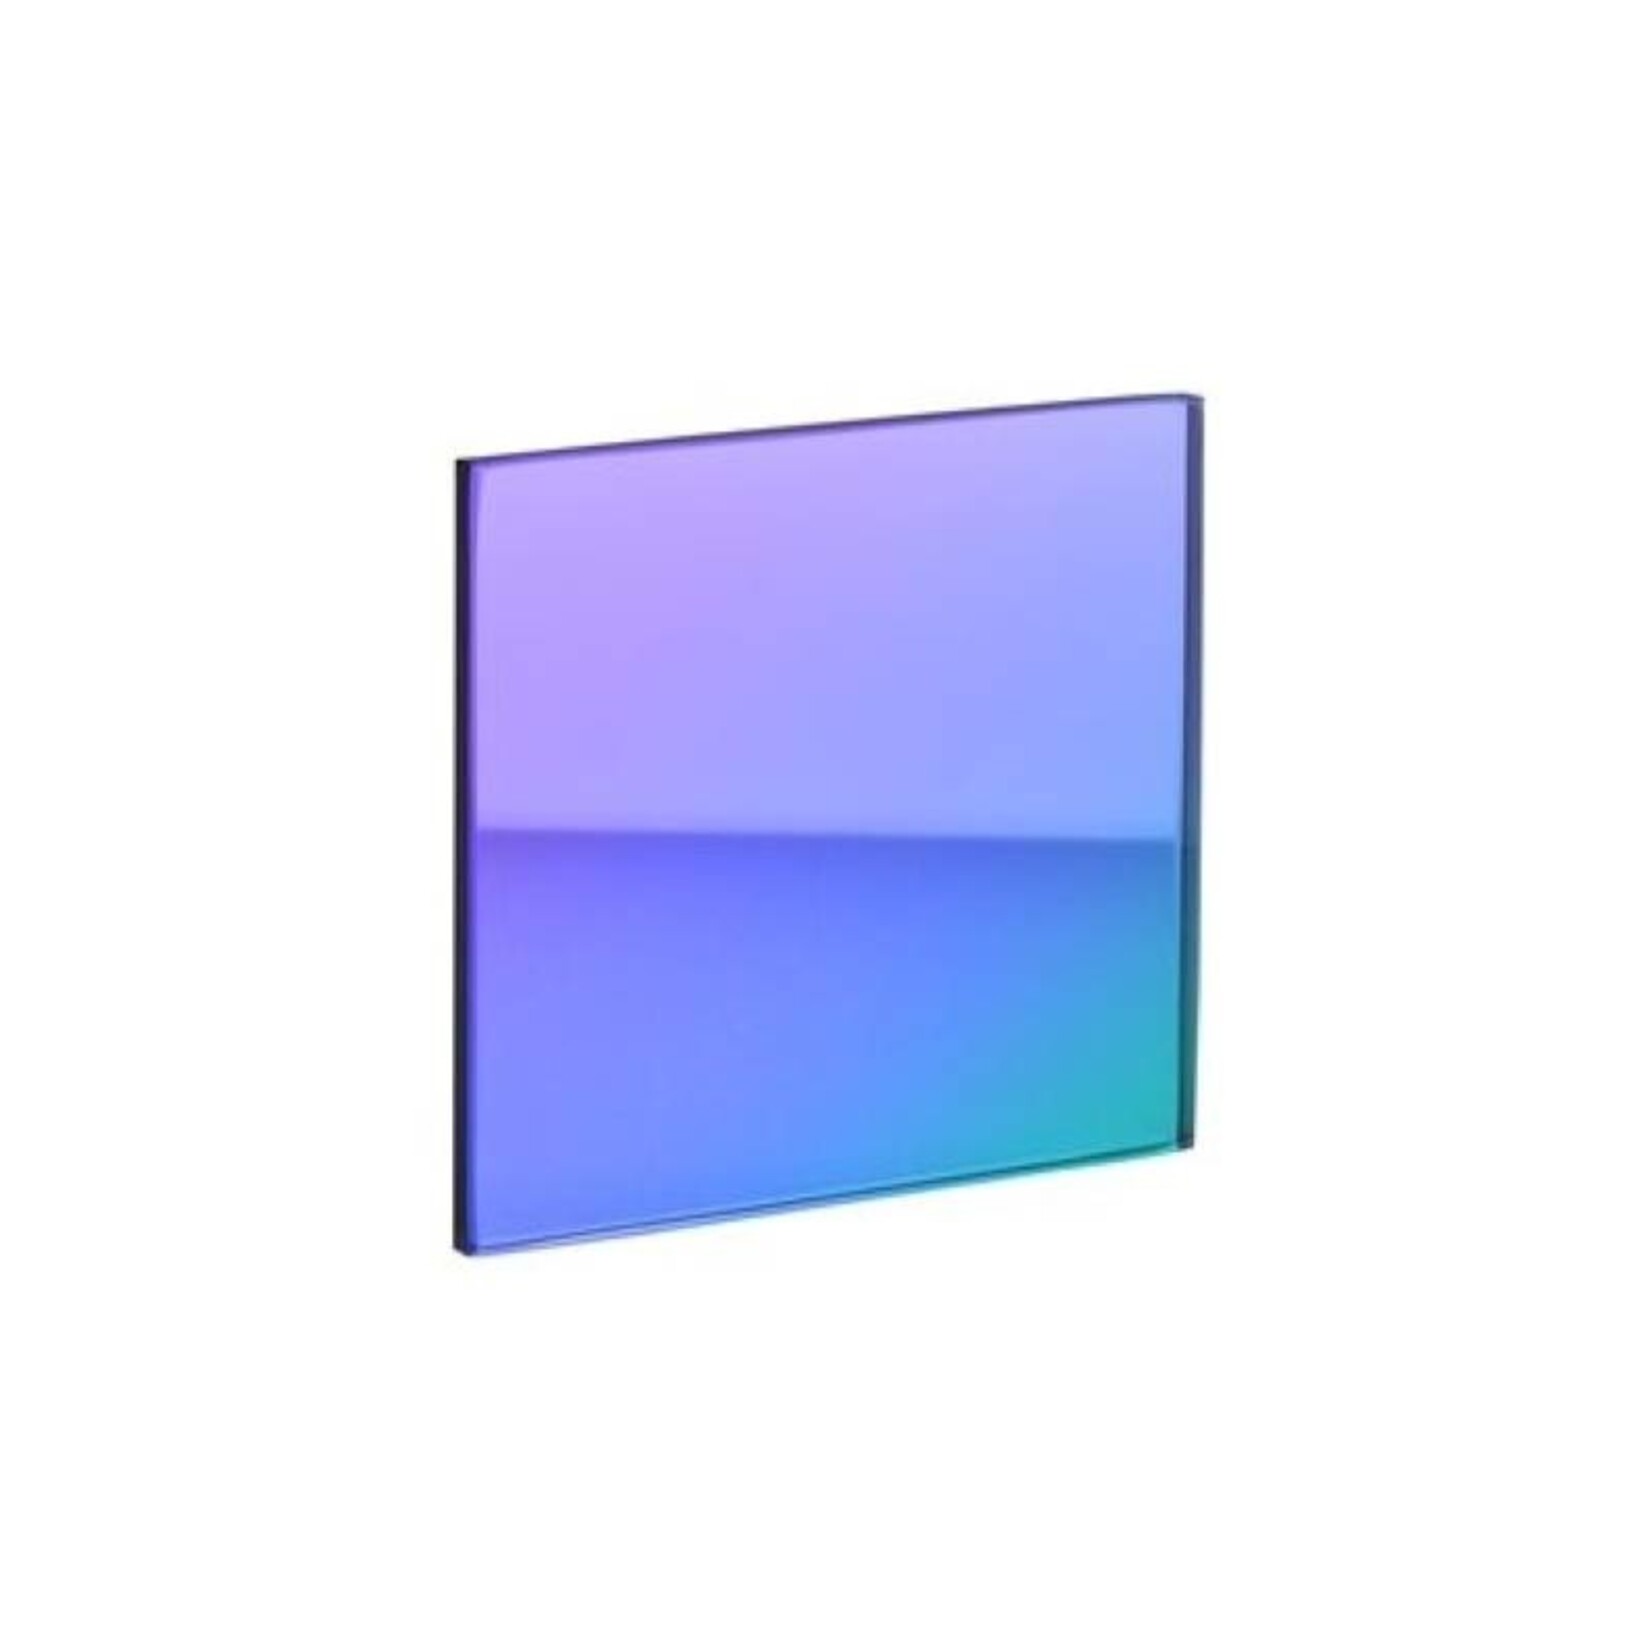 Glazen onderzetter - blauw/paars